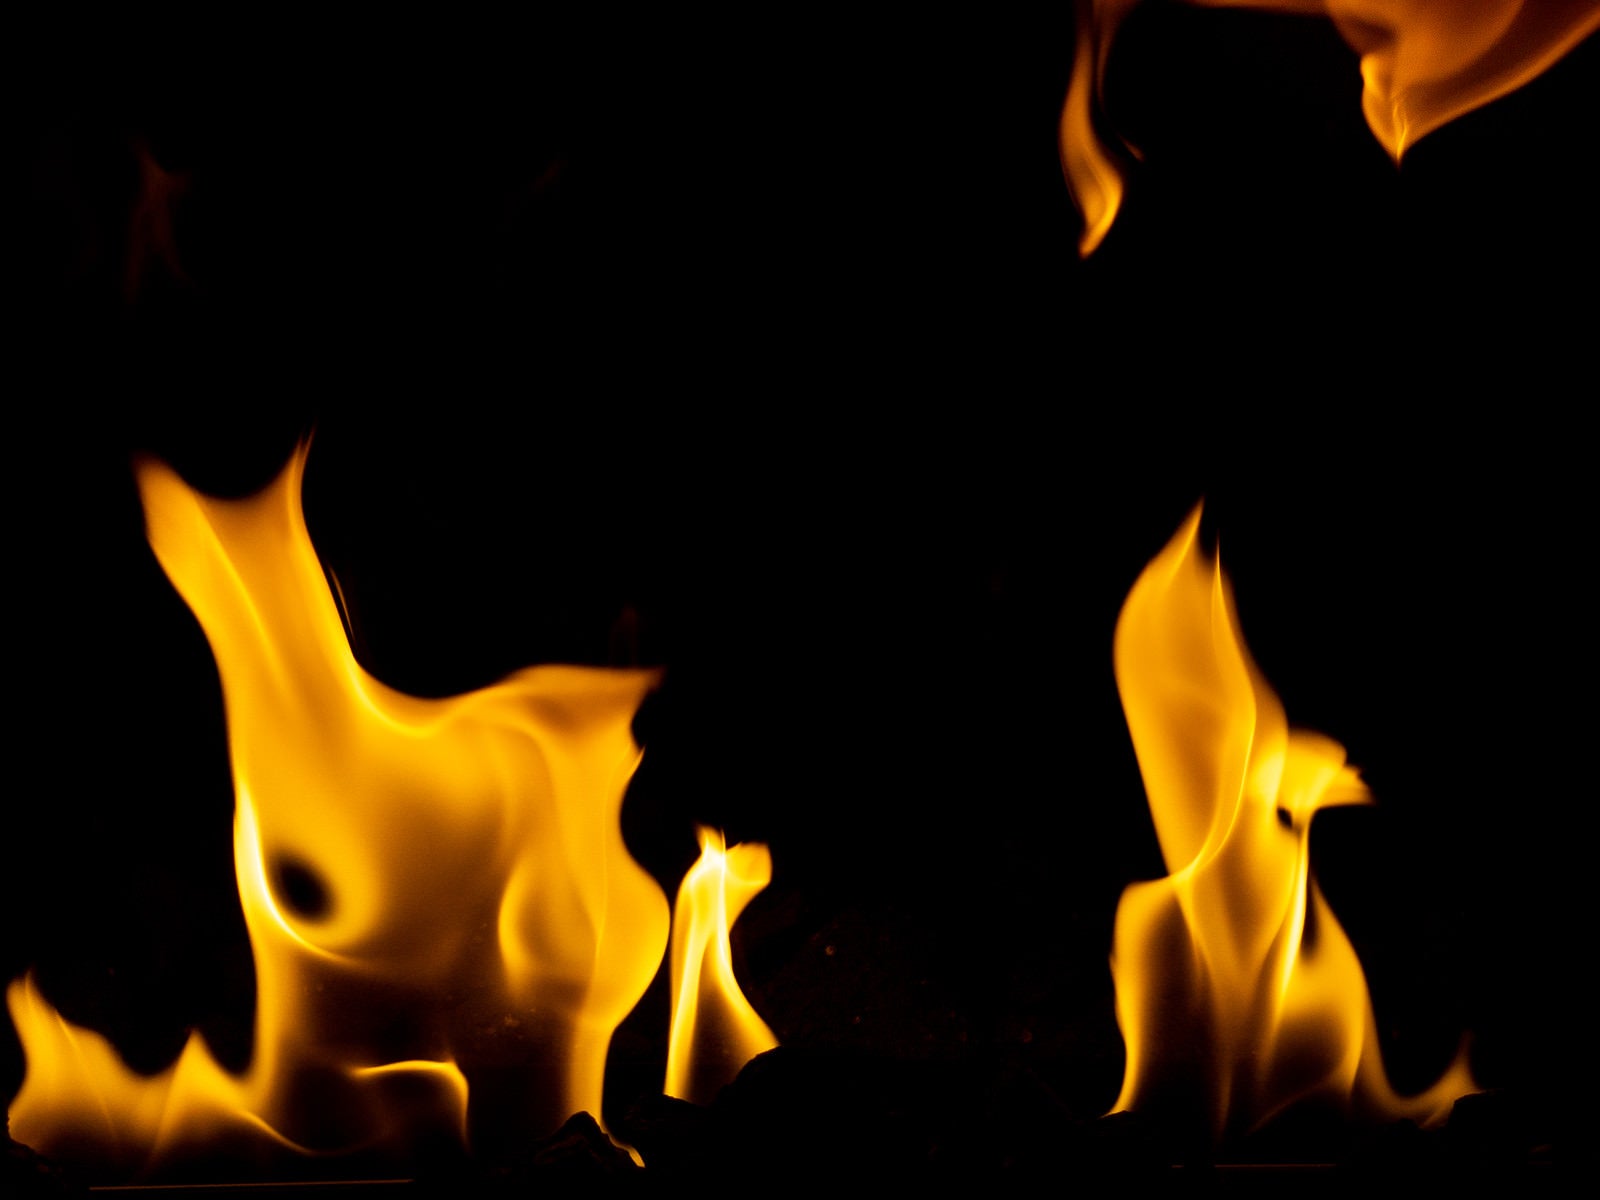 「暖炉の炎の様子」の写真